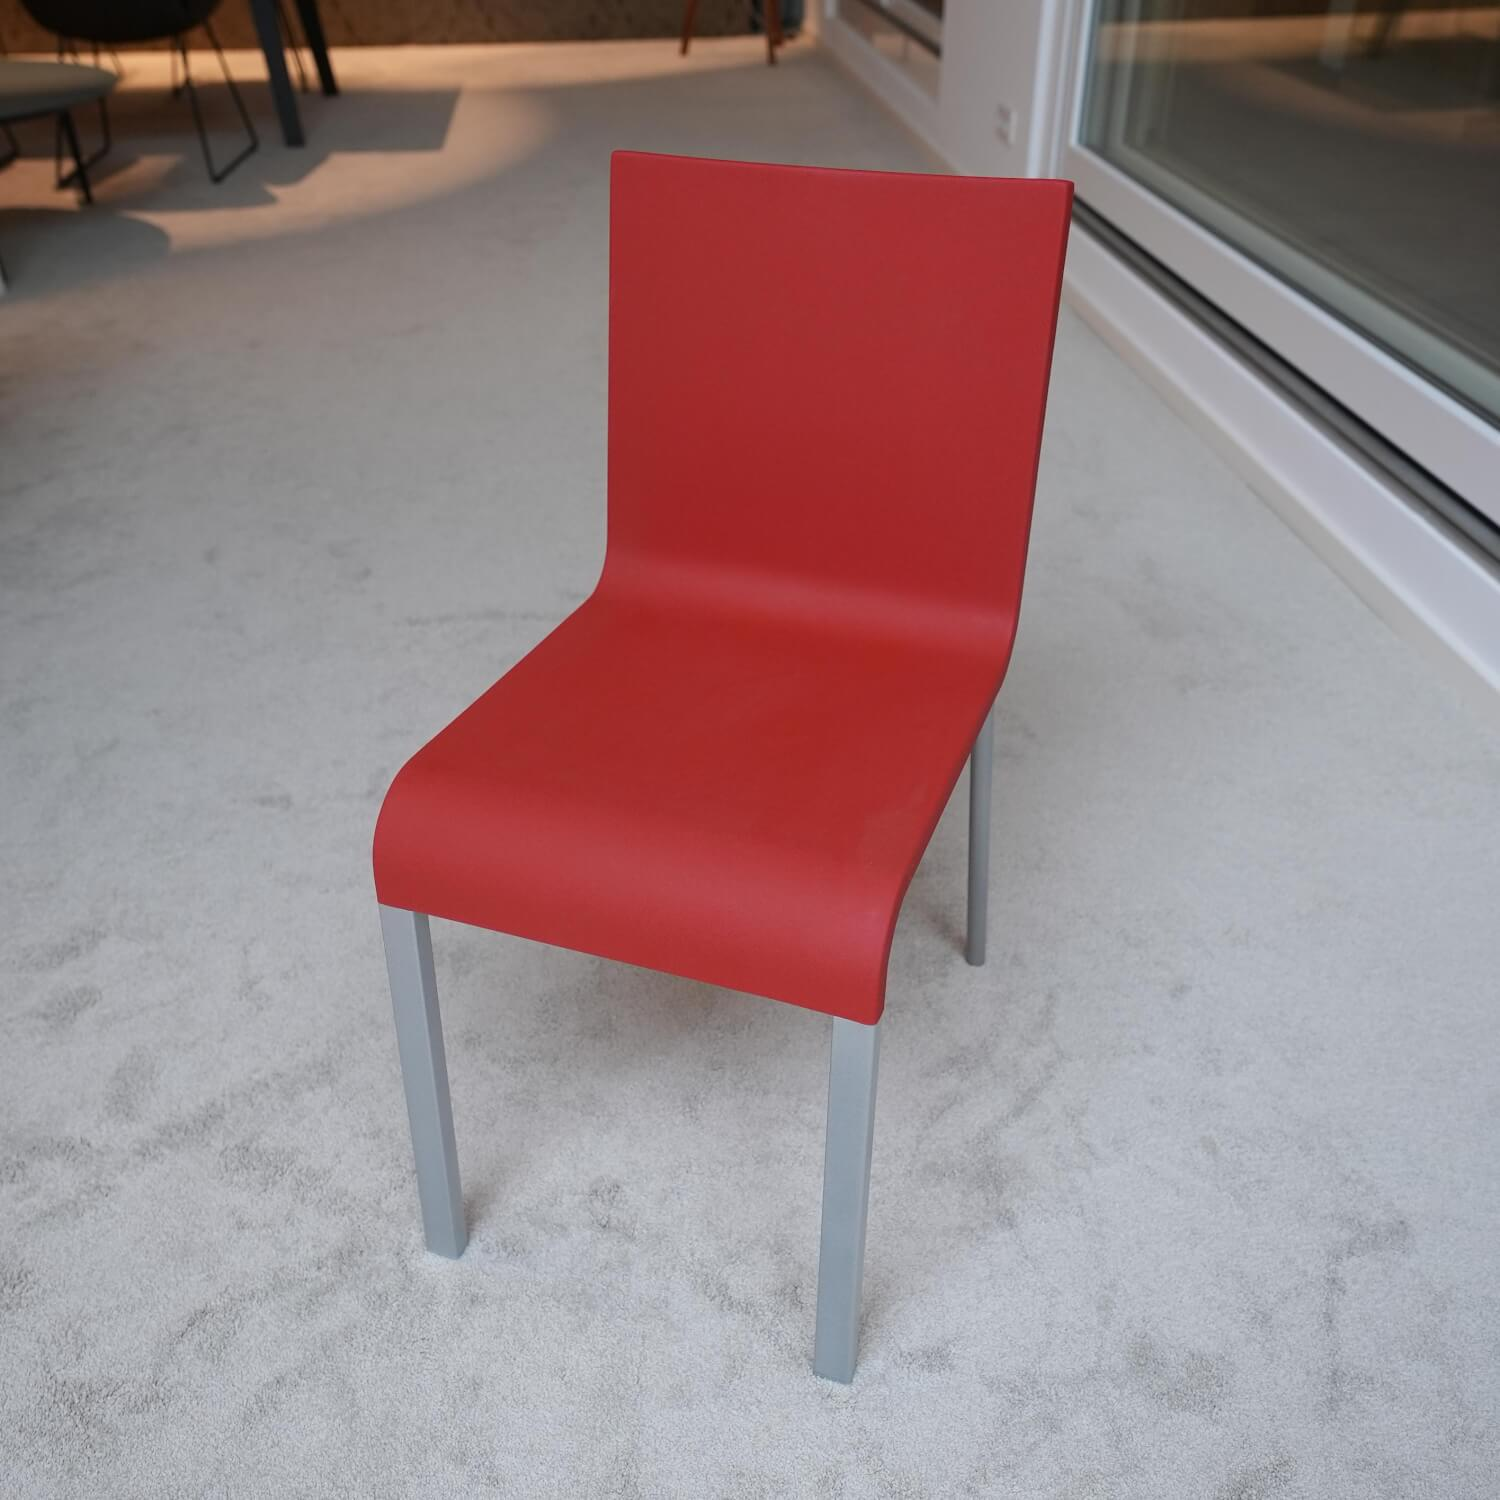 Stuhl 03 Sitzschalenfarbe Signalrot Untergestell Pulverbeschichtet Silber Glatt